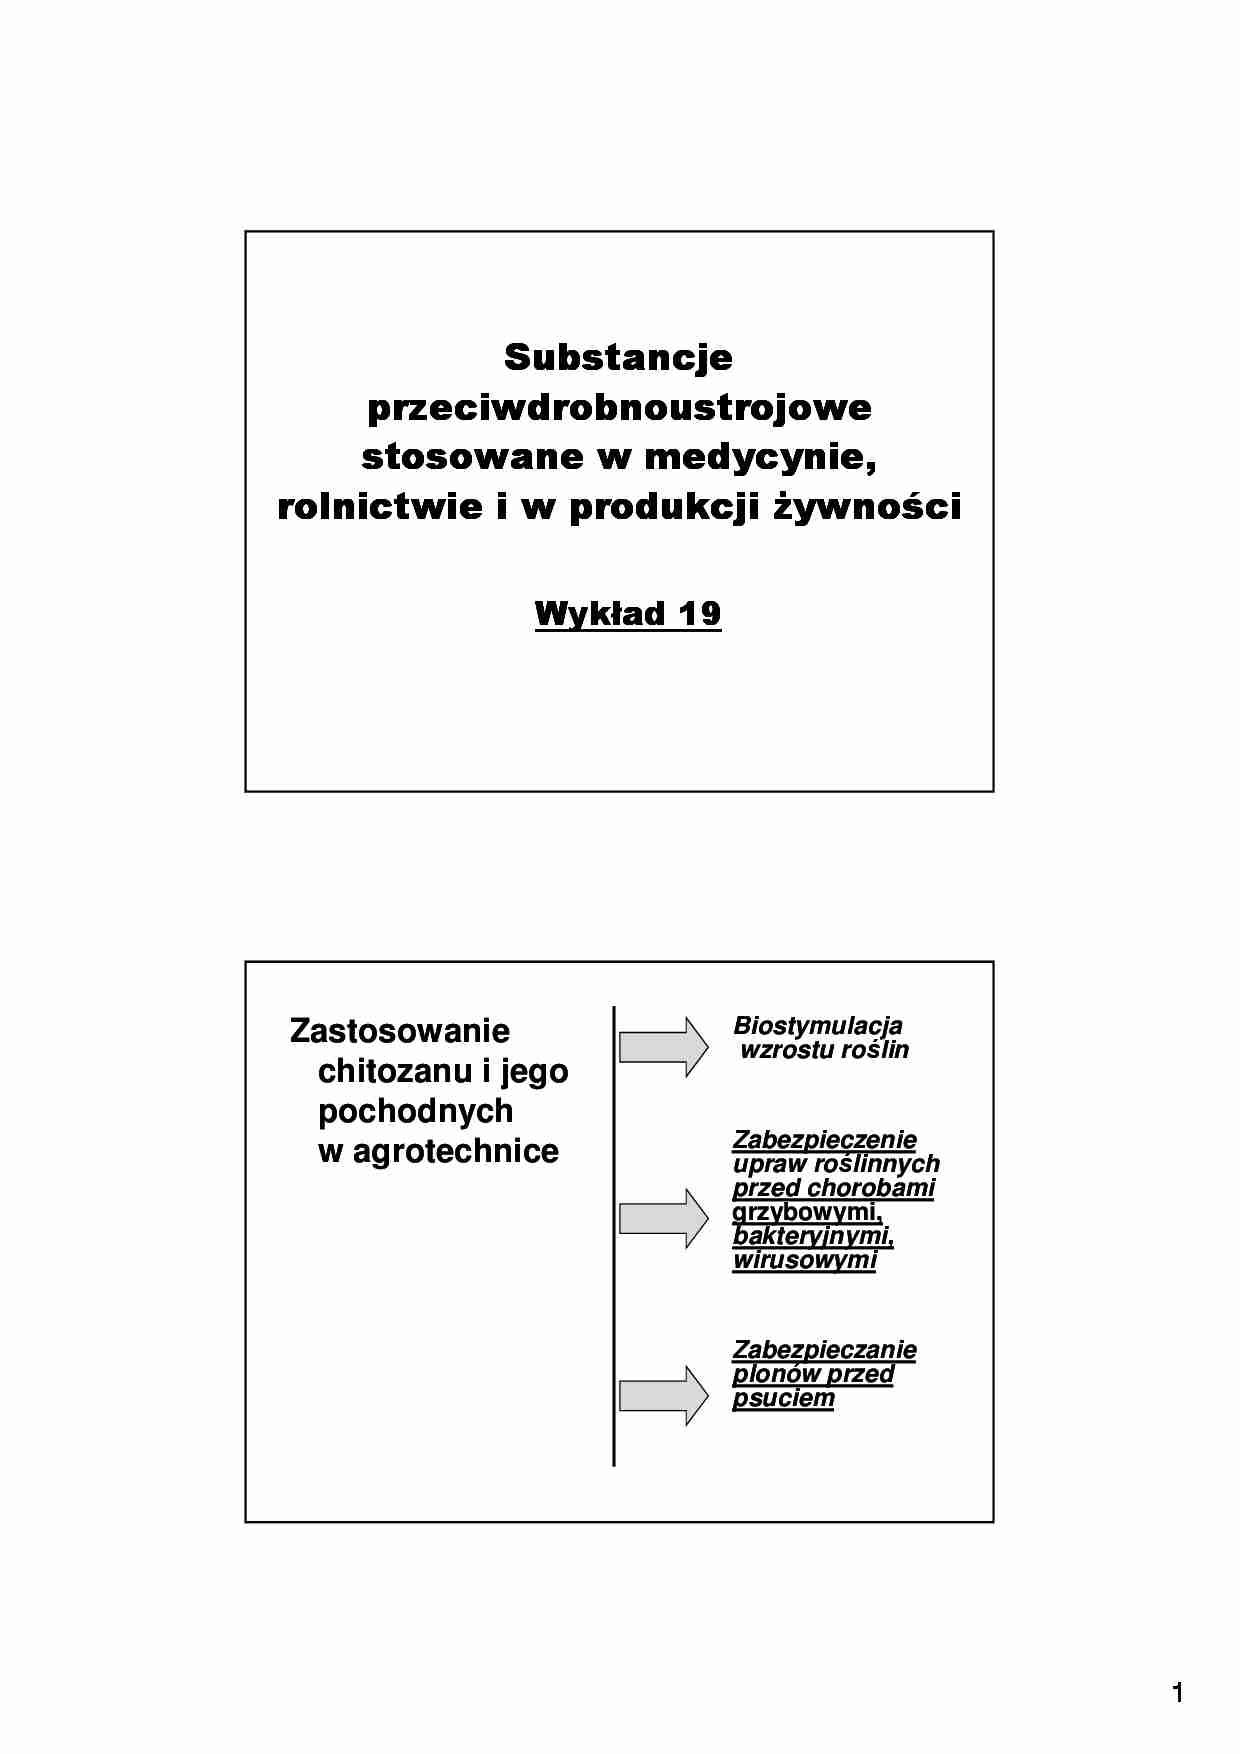 Substancje przeciwdrobnoustrojowe stosowane w medycynie, rolnictwie i w produkcji żywności- wykład 19 - strona 1